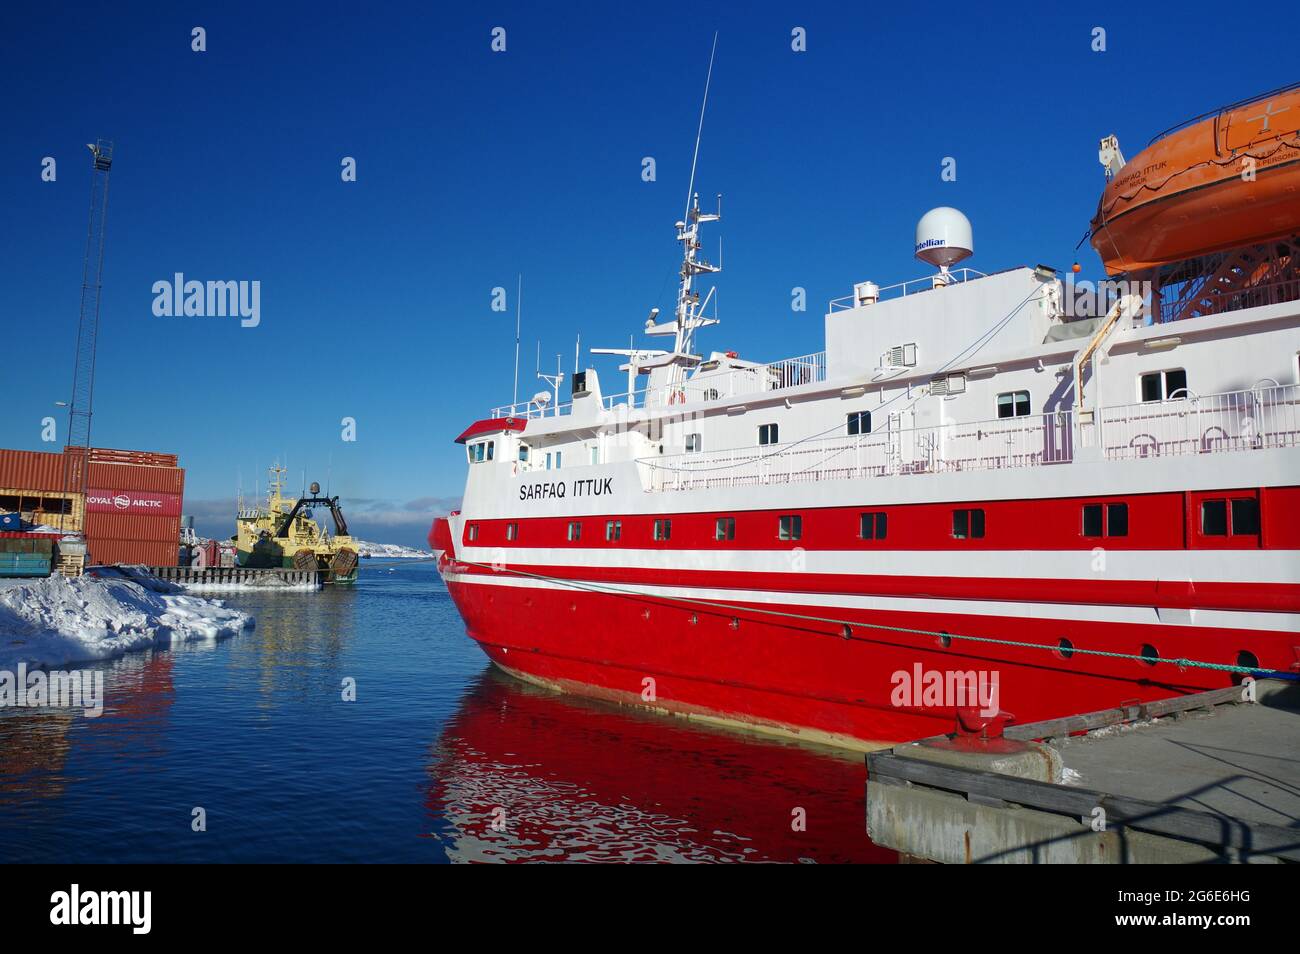 Rotes Schiff, Passagierfähre Sarfaq Ittuk, Sisimuit, Grönland, Dänemark Stockfoto